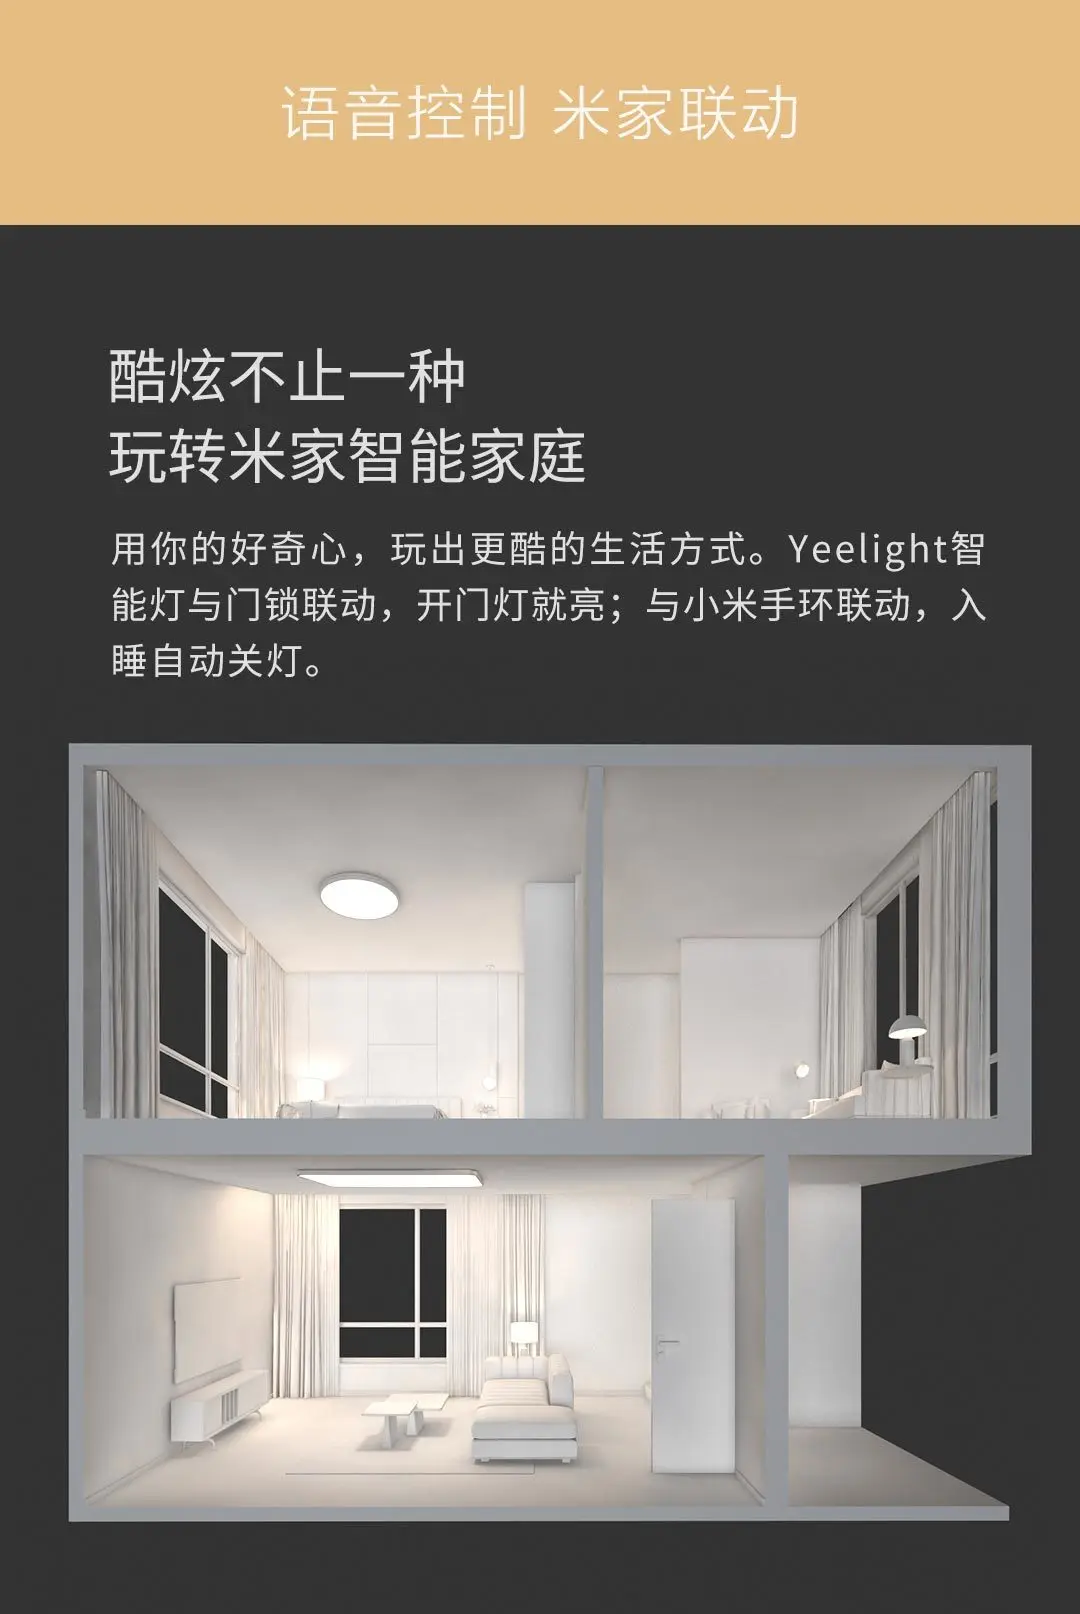 Обновленный двухсторонний Xiaomi Yeelight Light набор оптического волокна тонкий дизайн Mijia Smart APP XIOMI Mihome умный контроль для дома